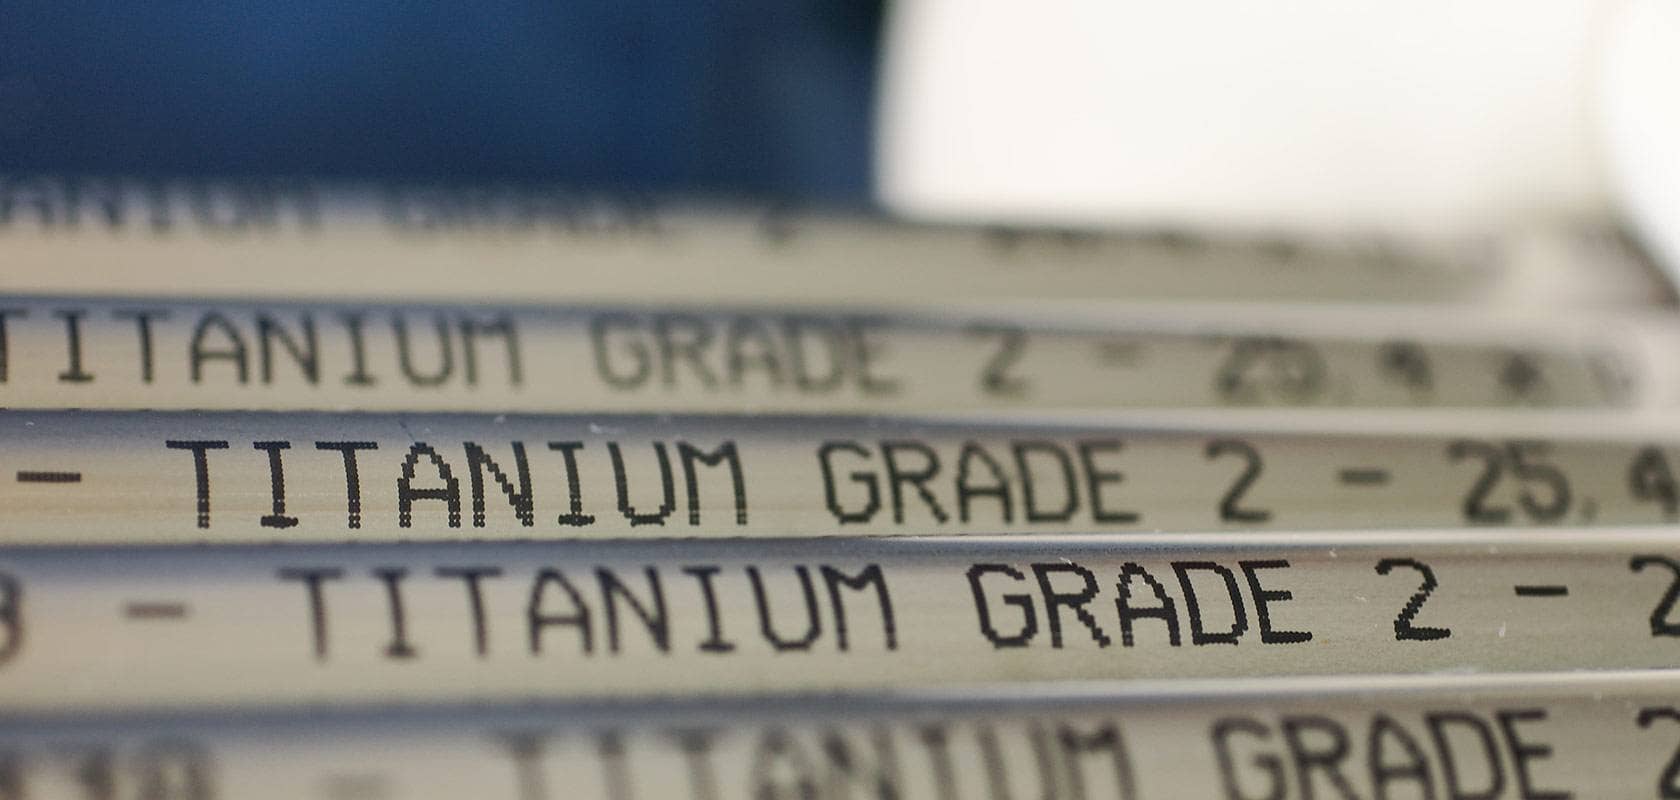 Titanium Tubes Grade 2